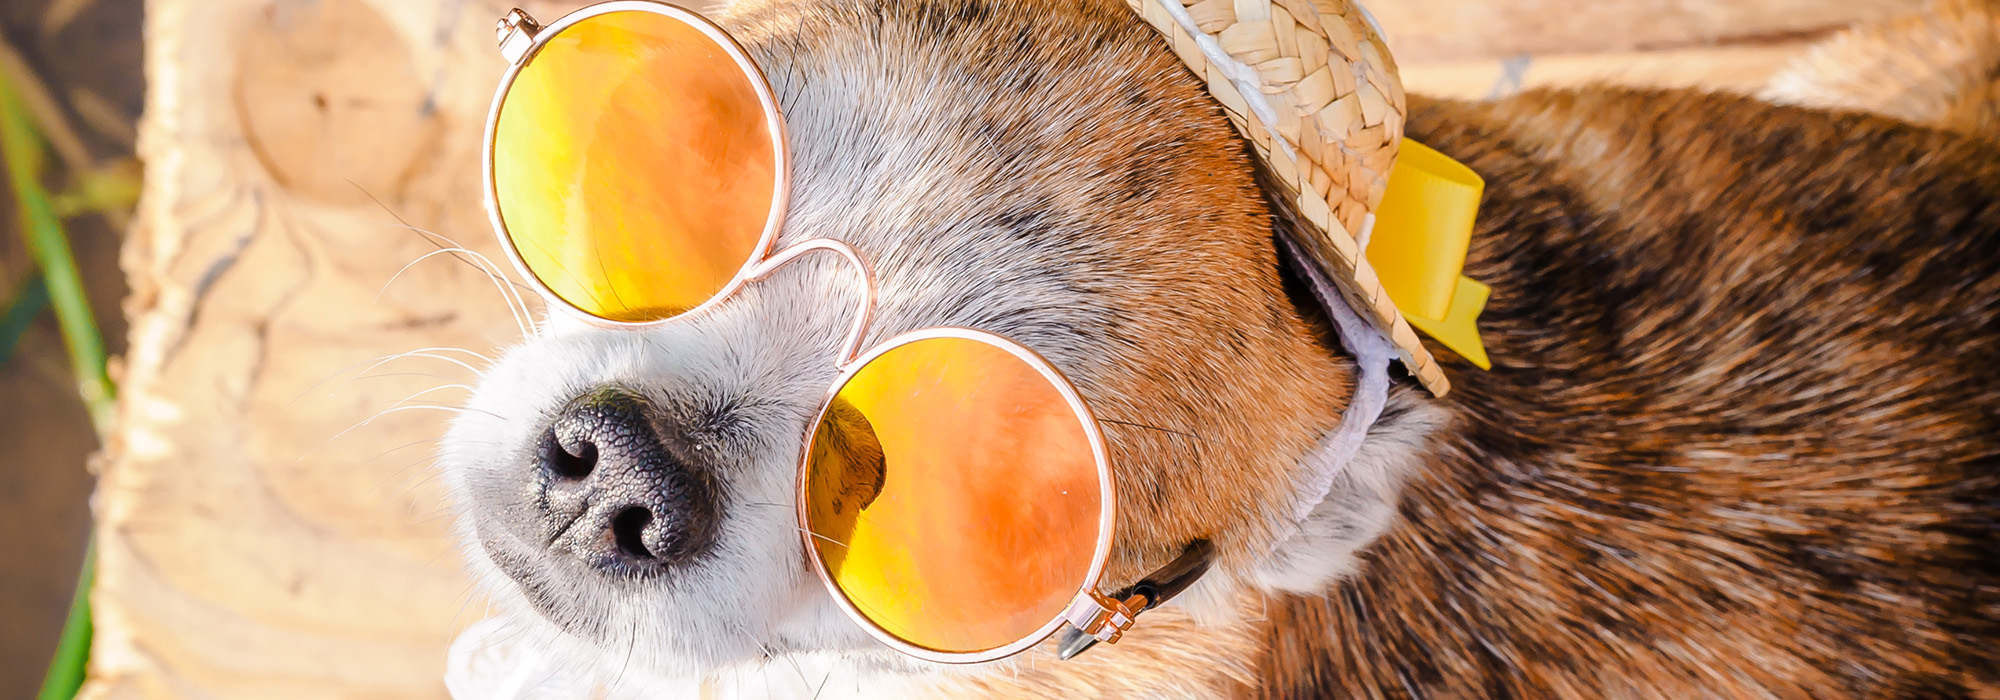 A chihuahua wears sunglasses